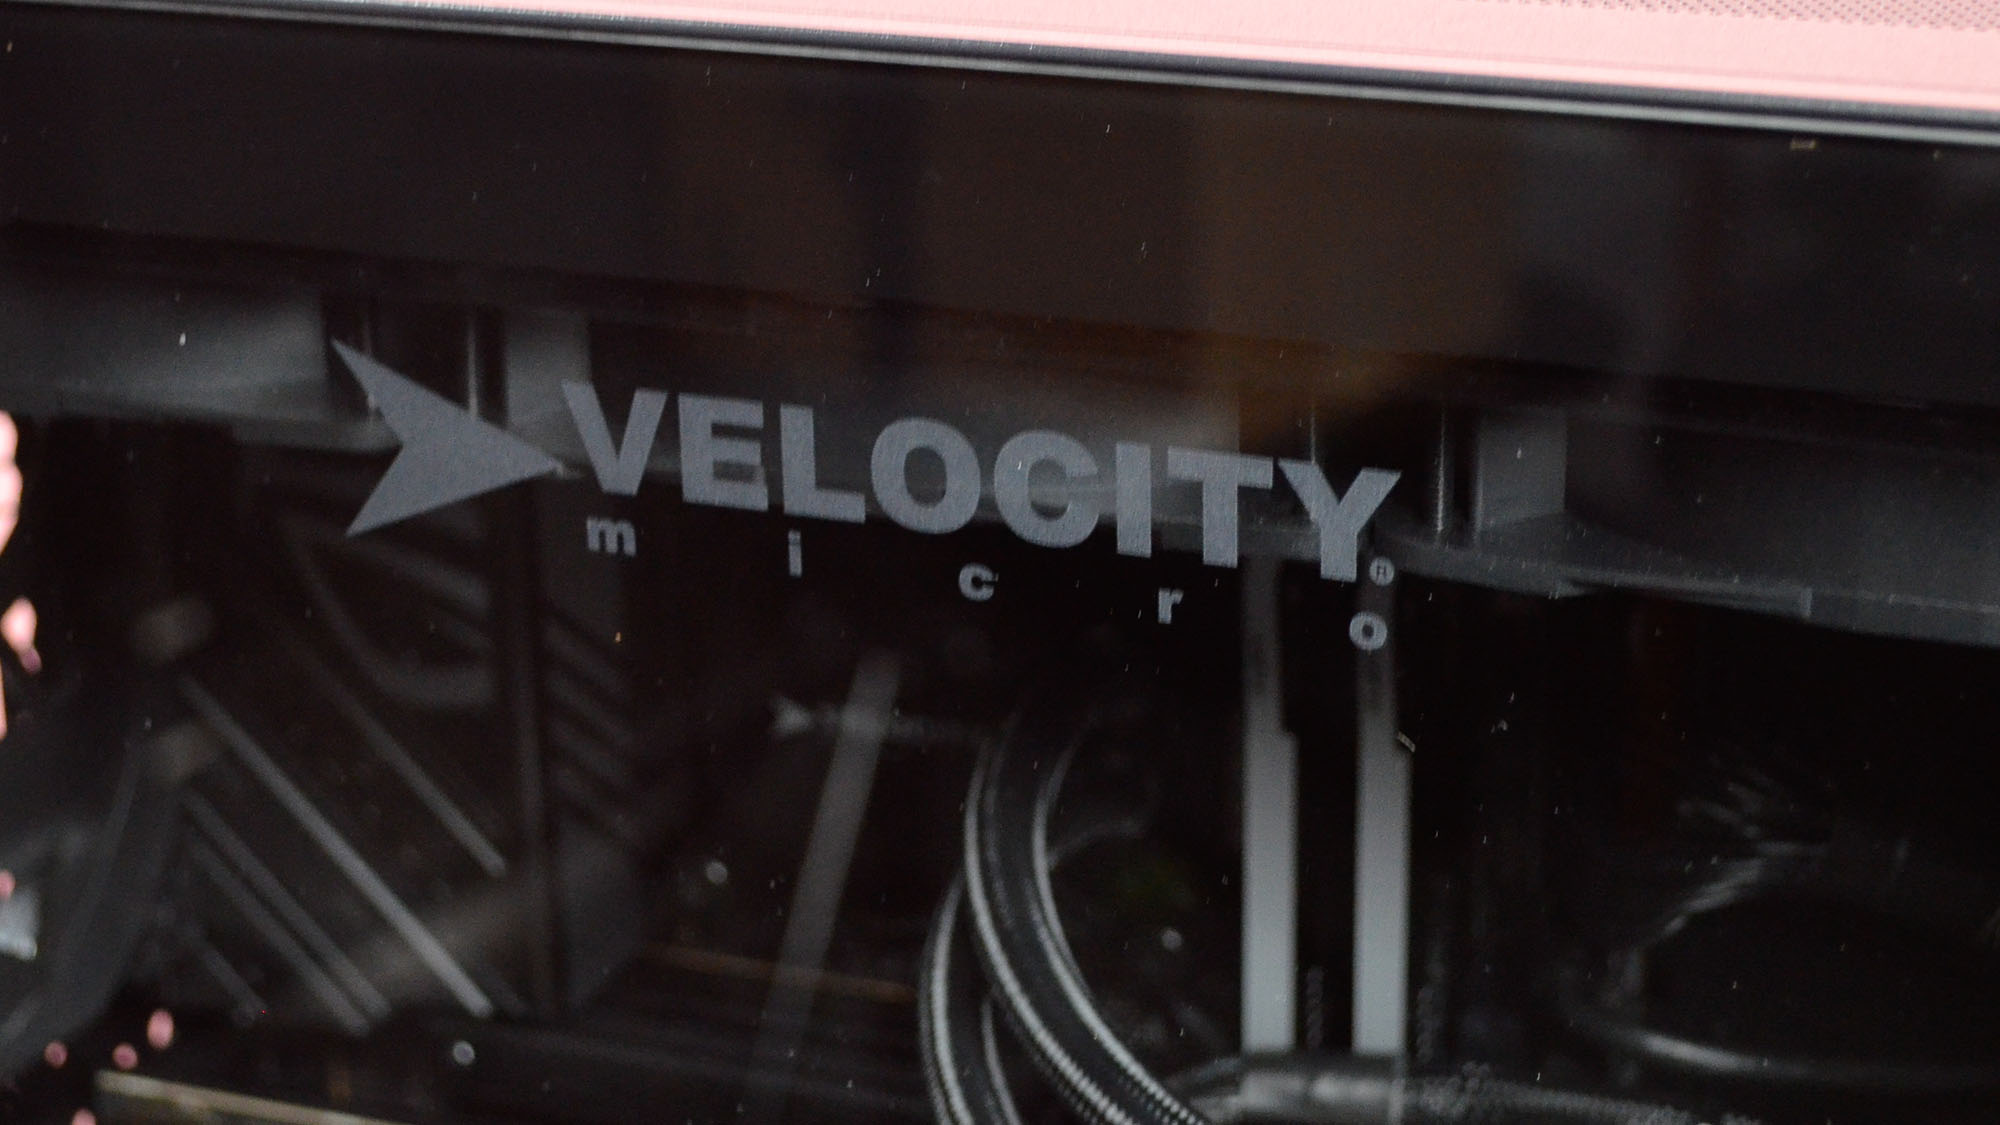 A Velocity Micro Raptor Z95 PC on a desk